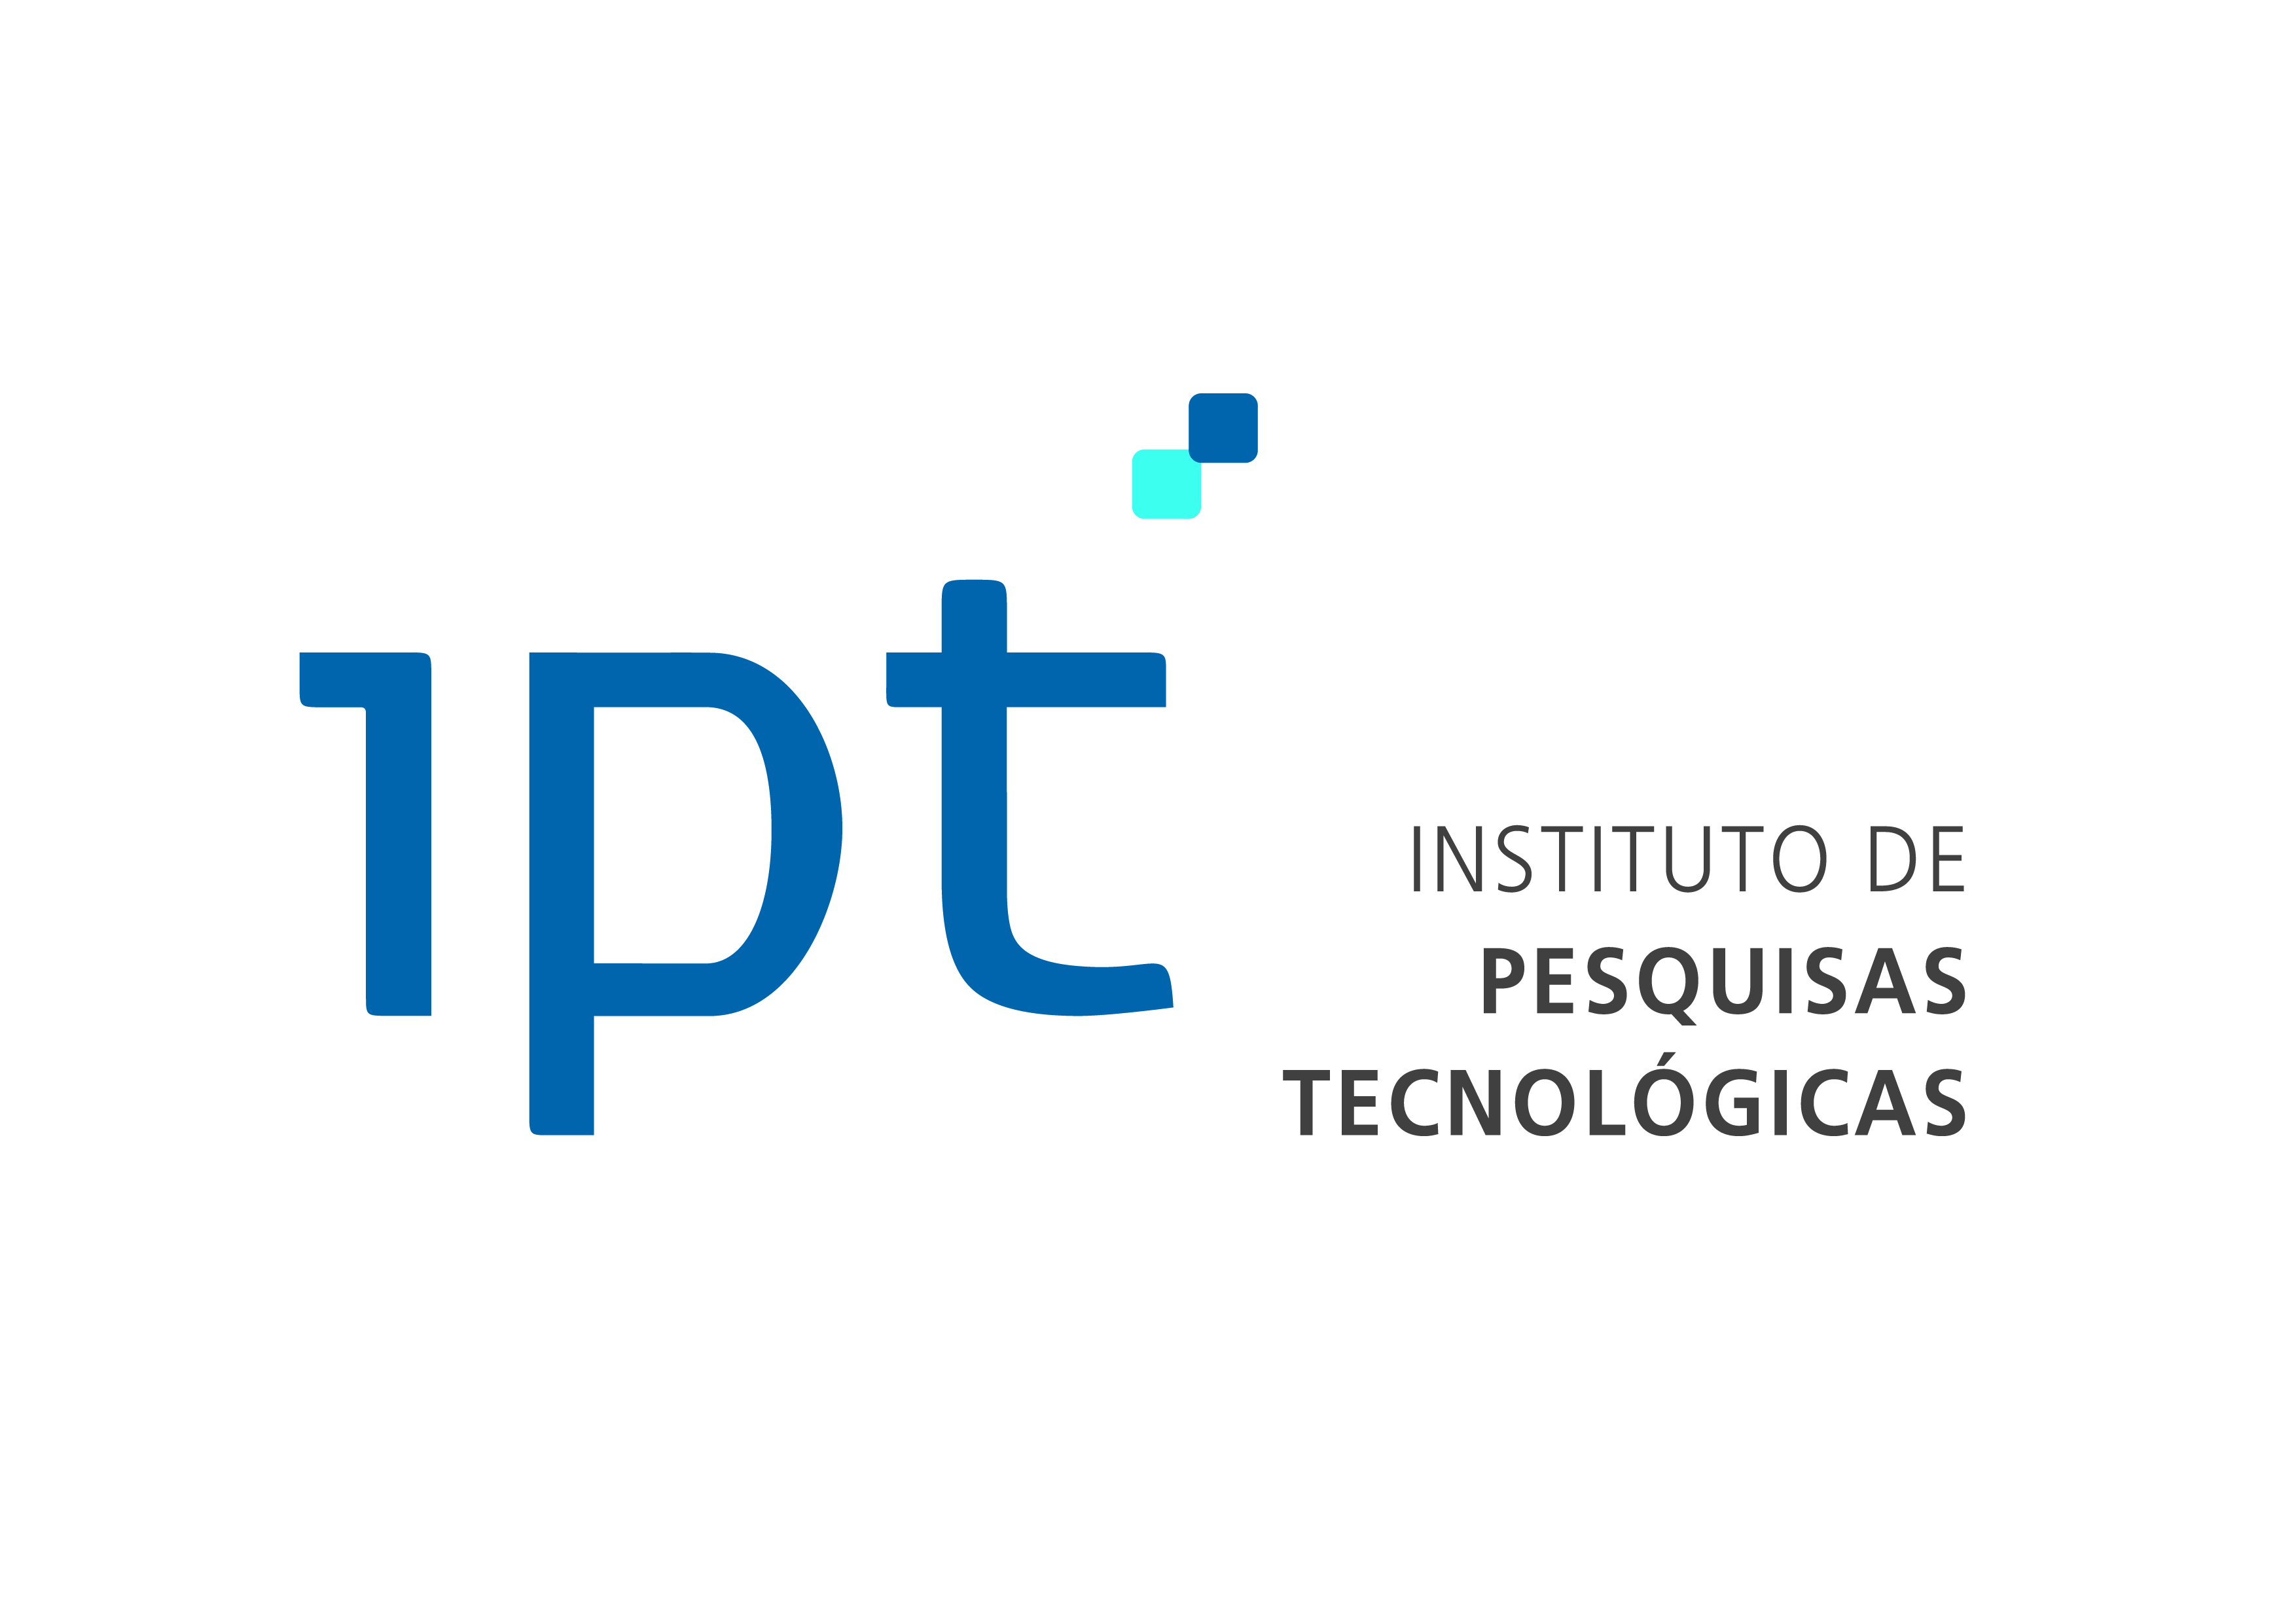 IPT - <div>The IPT, <b>Instituto de Pesquisas Tecnológicas (Institute of Technological Research)</b>, crea